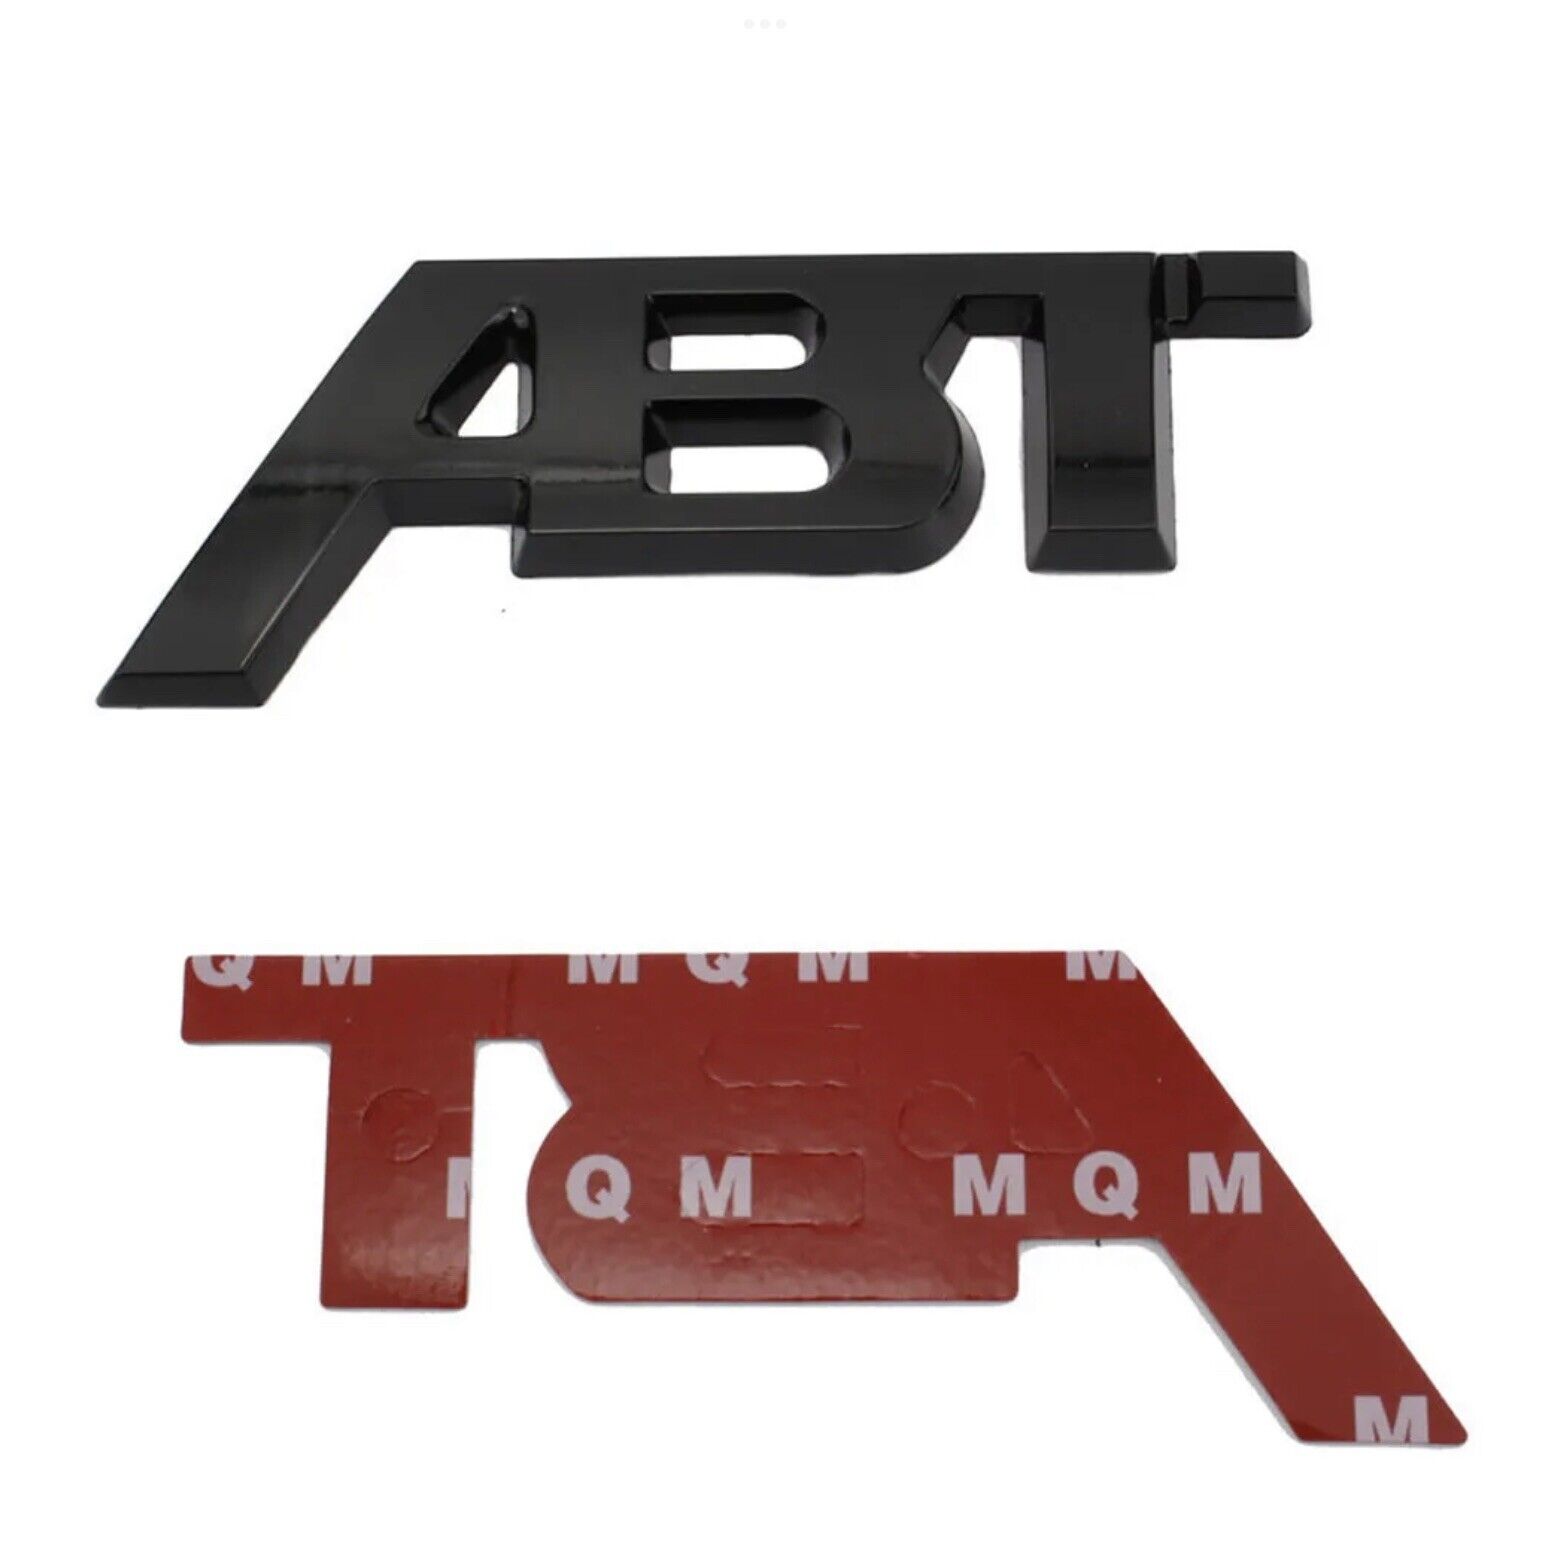 1x ABT Emblem Abzeichen Aufkleber Car schwarzer Aufkleber für Audi Seat NEW